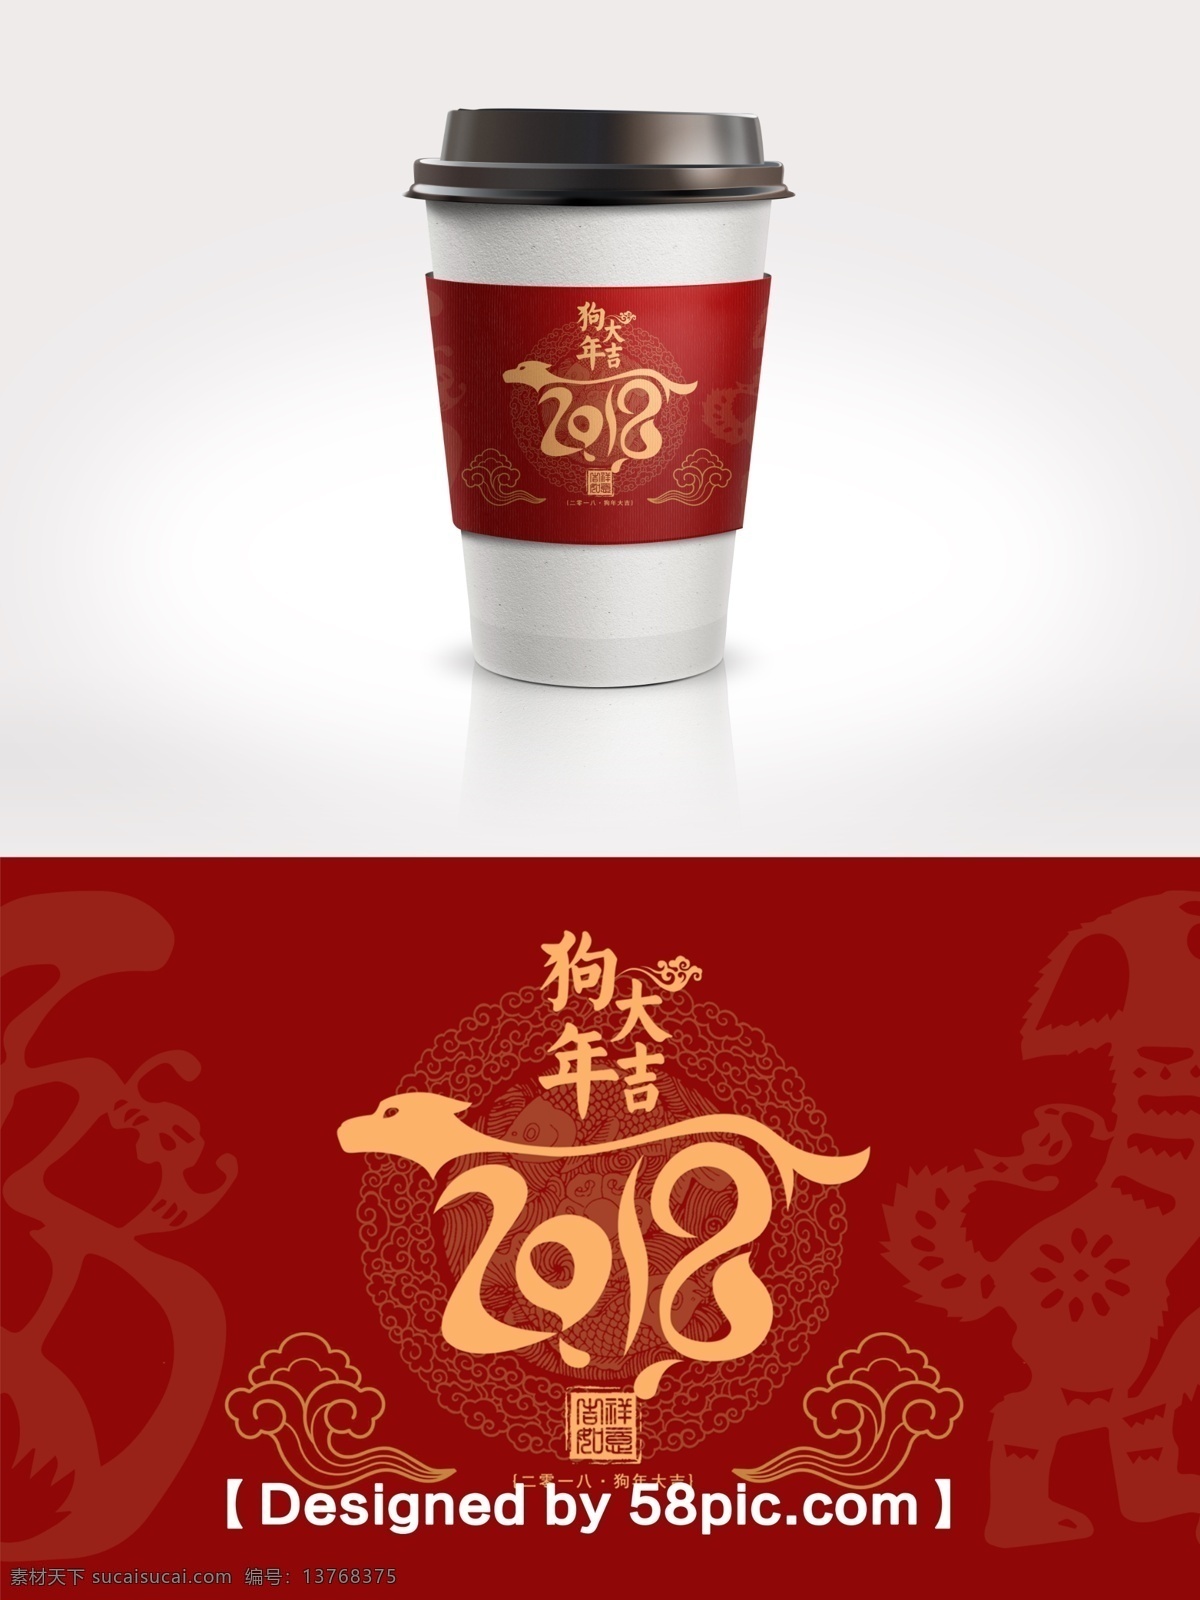 中国 风 2018 狗年 吉祥 节日 包装 咖啡杯 套 psd素材 广告设计模版 节日包装 咖啡杯套设计 喜庆大气 中国风